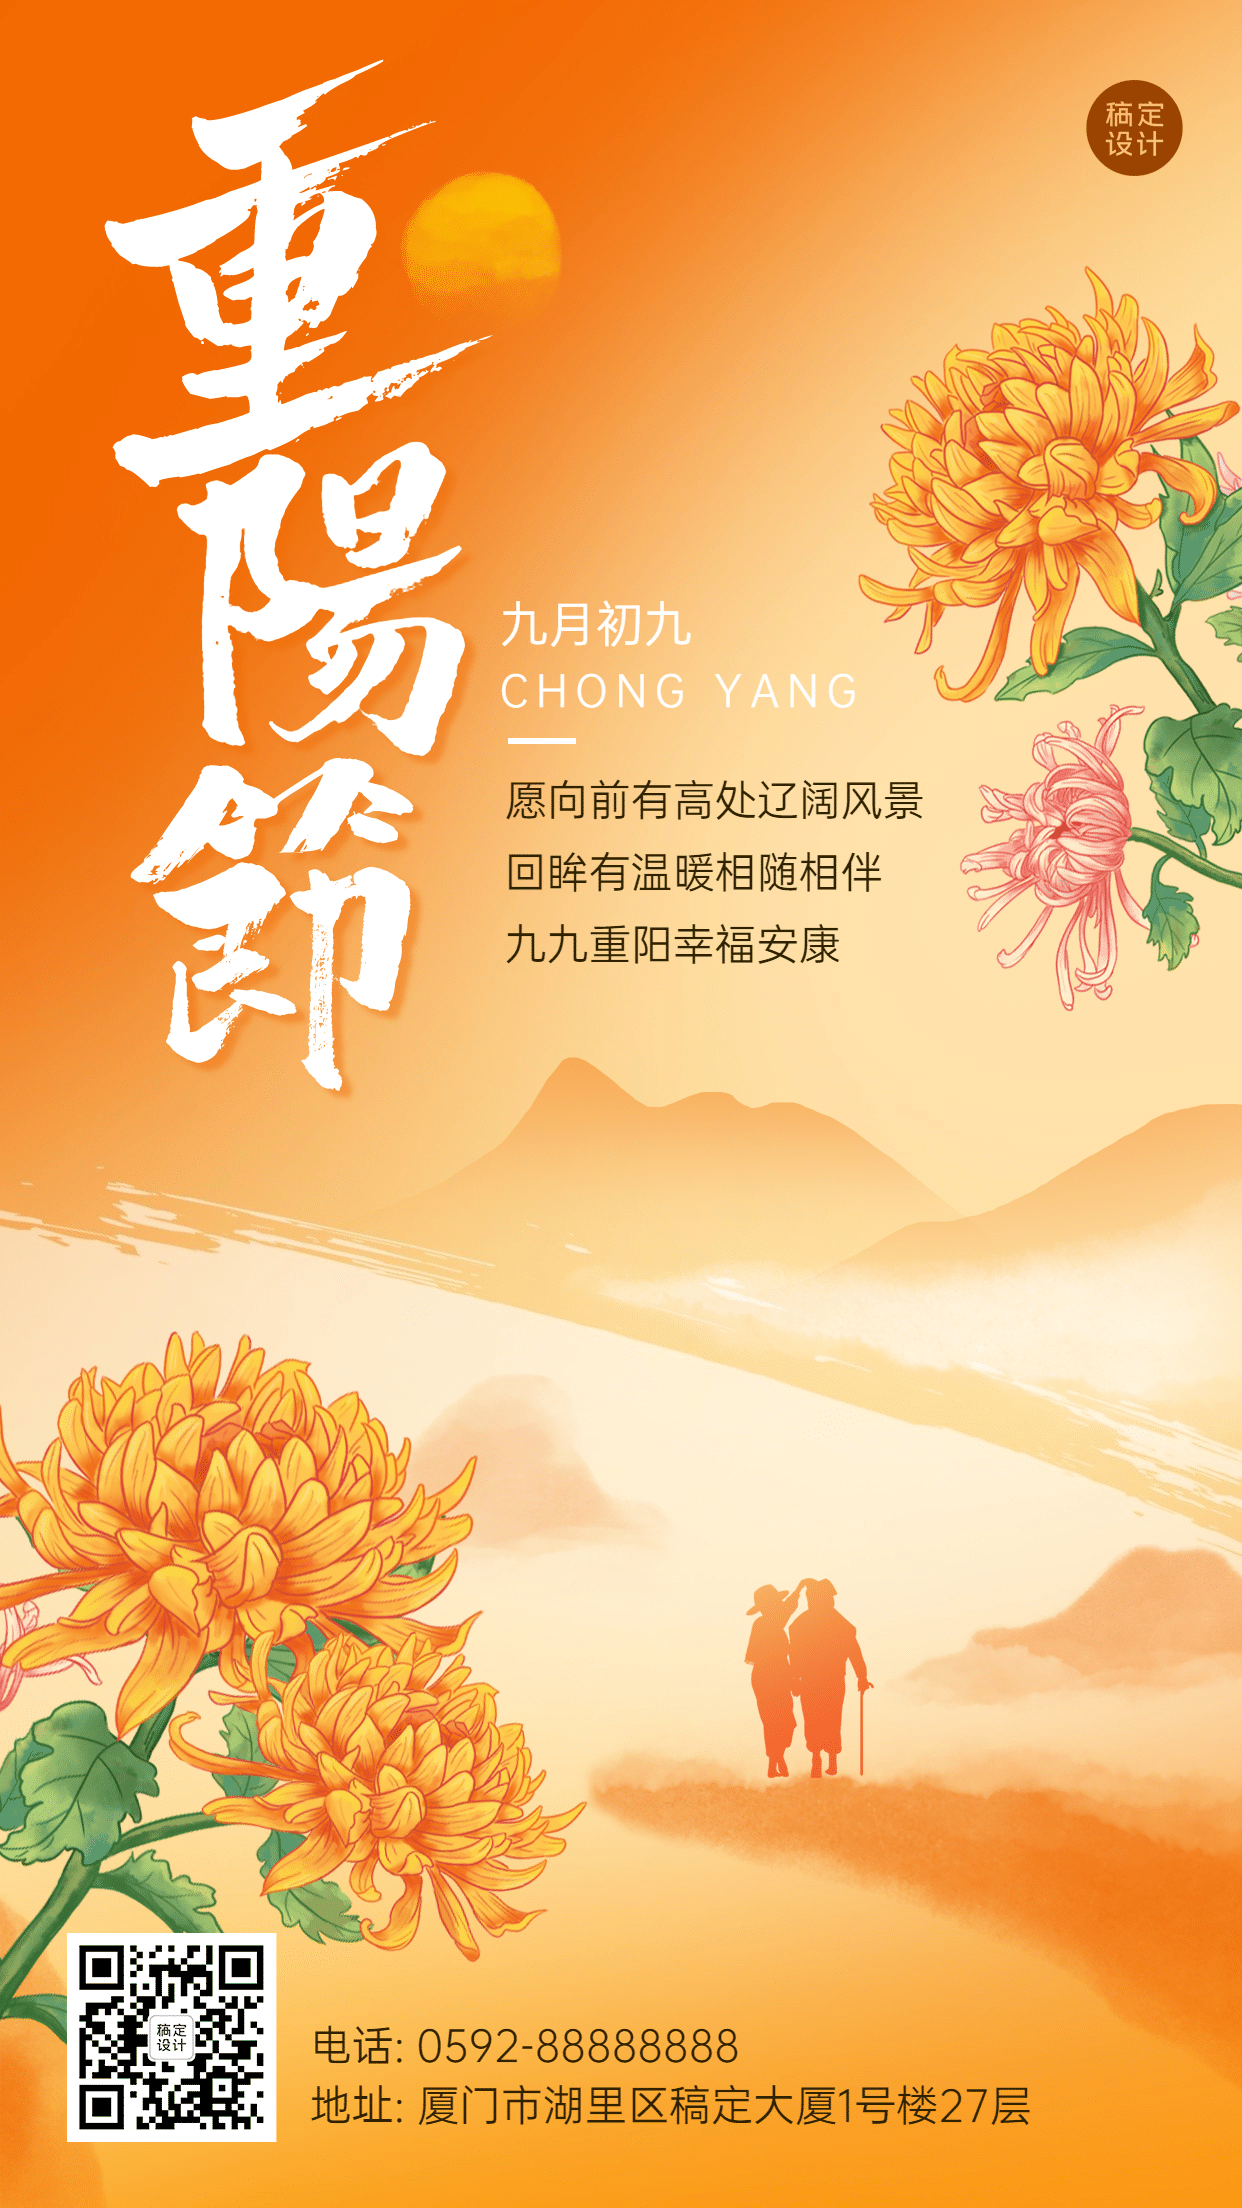 九九重阳节祝福人物剪影远山手绘海报